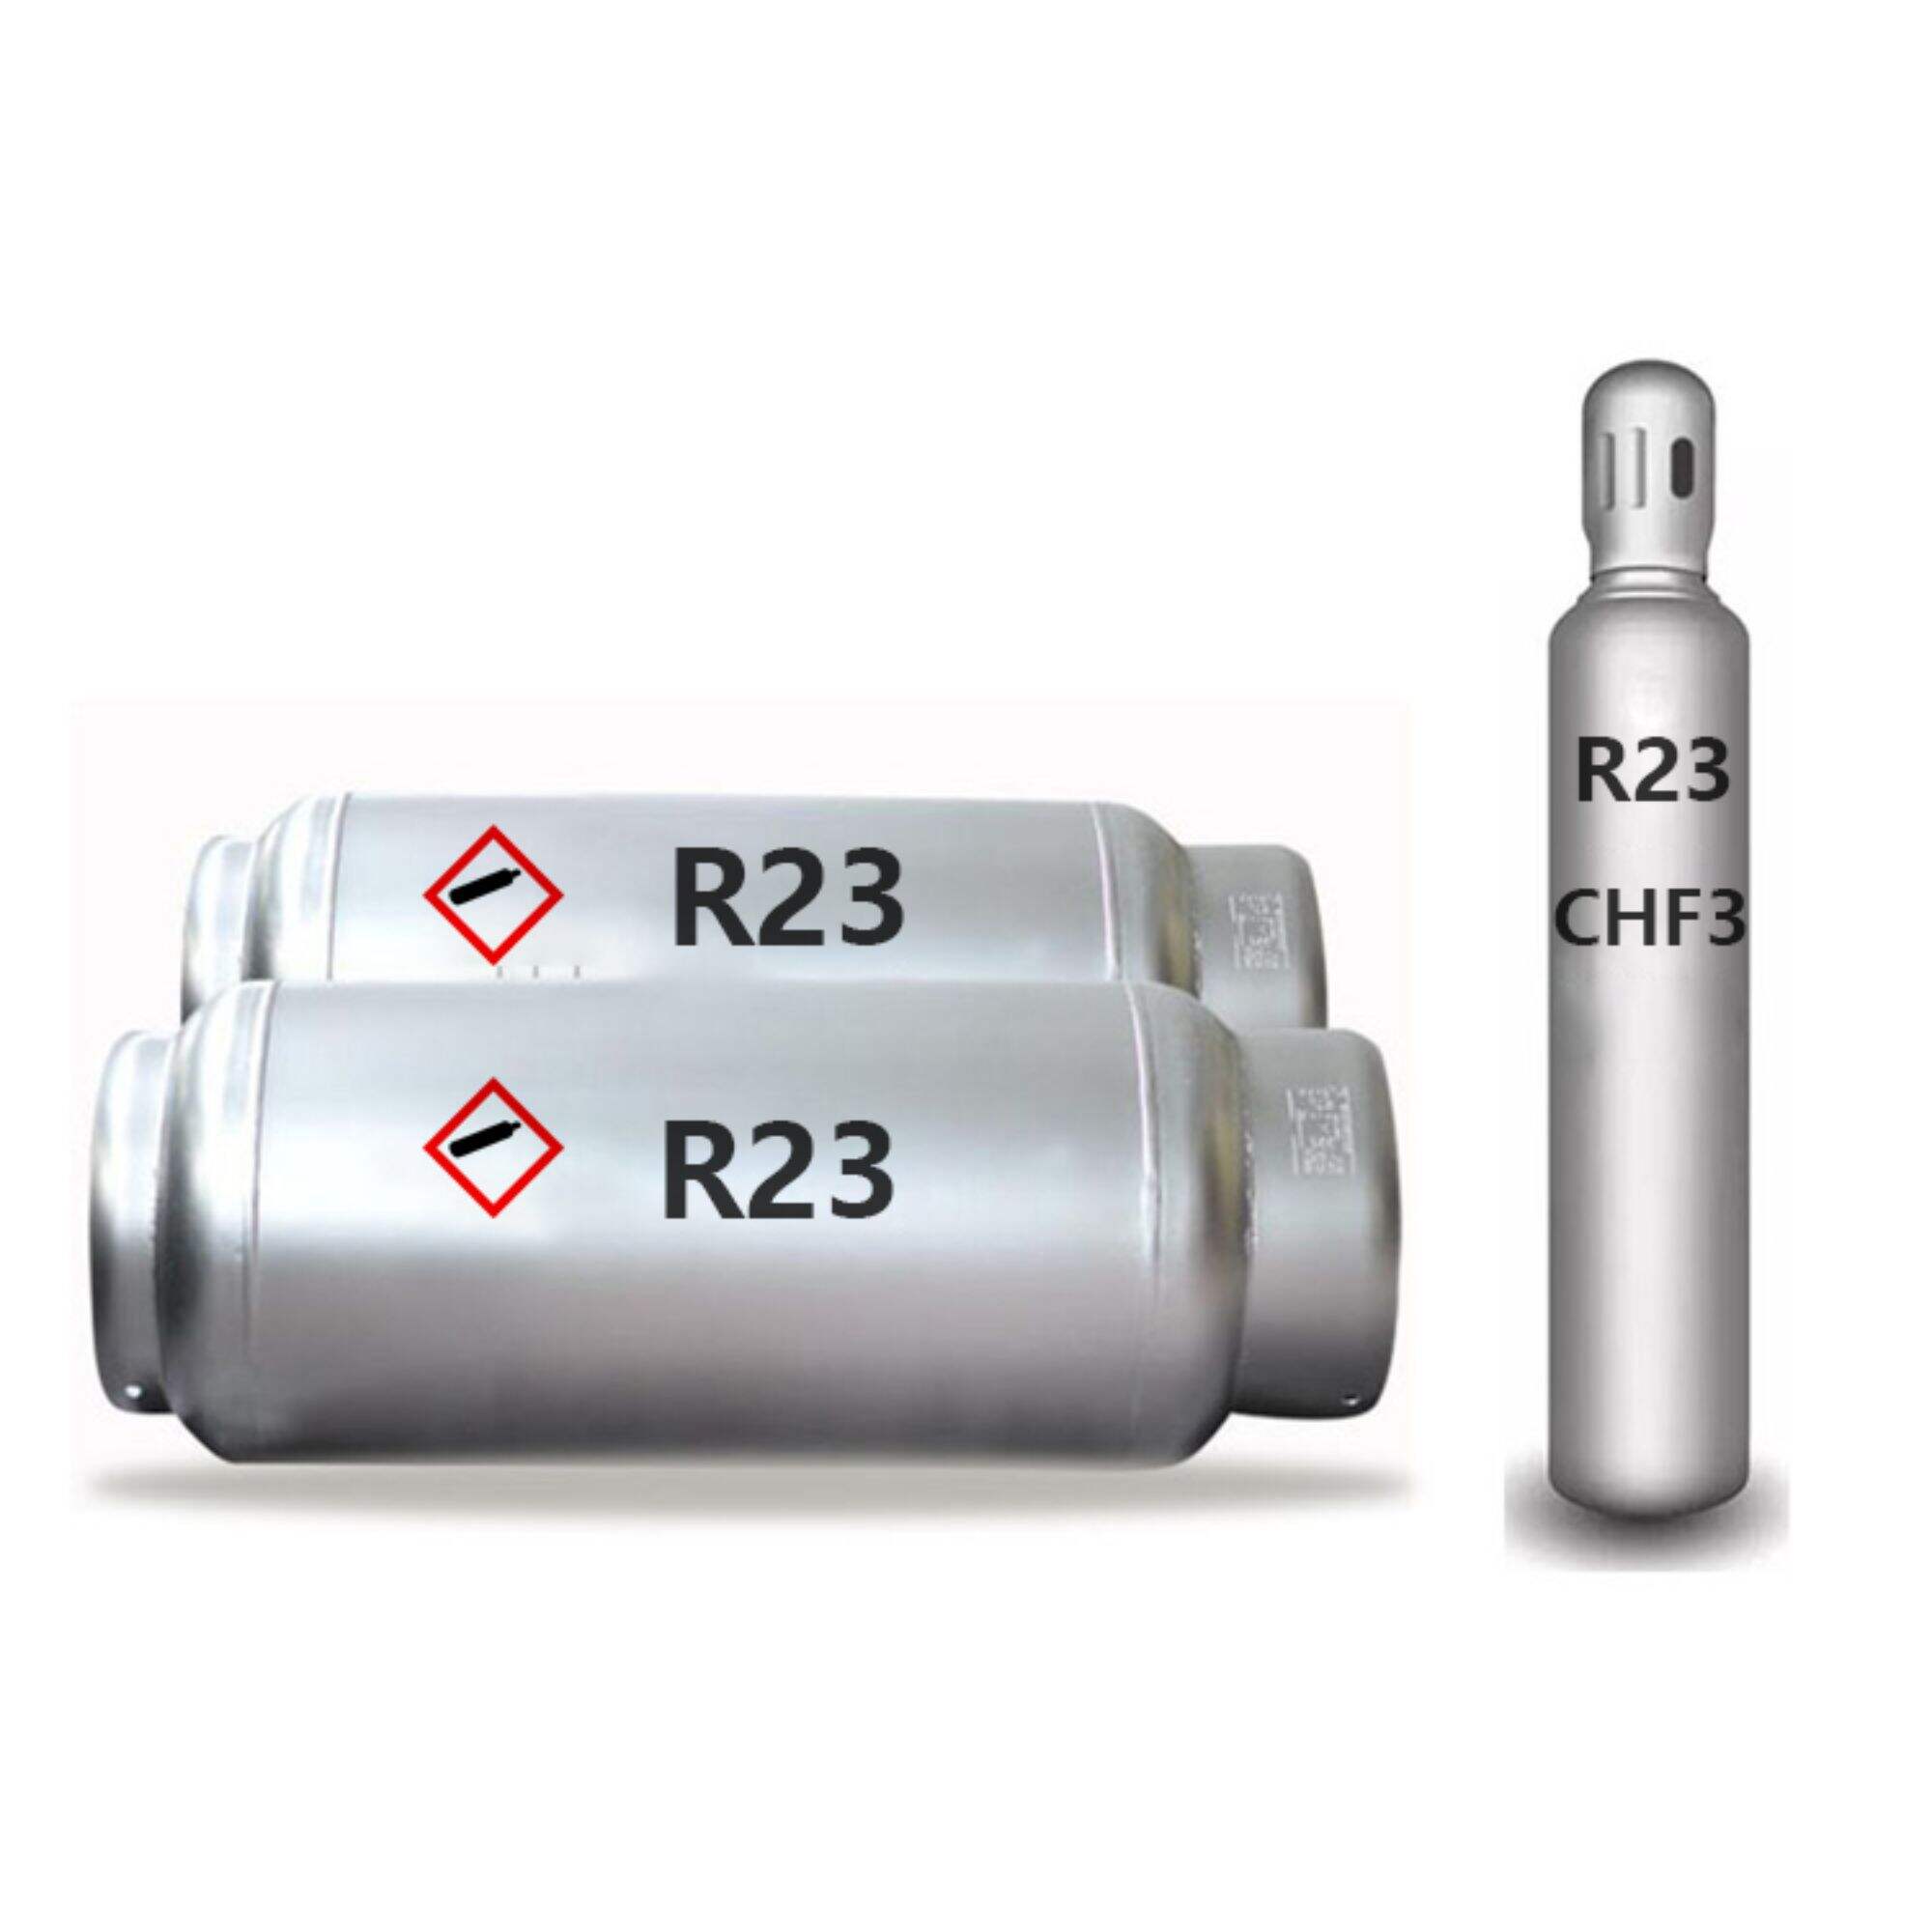 高純度ガスシリンダー付き 電子グレード R23 トリフルオロメタン CHF3 ガス